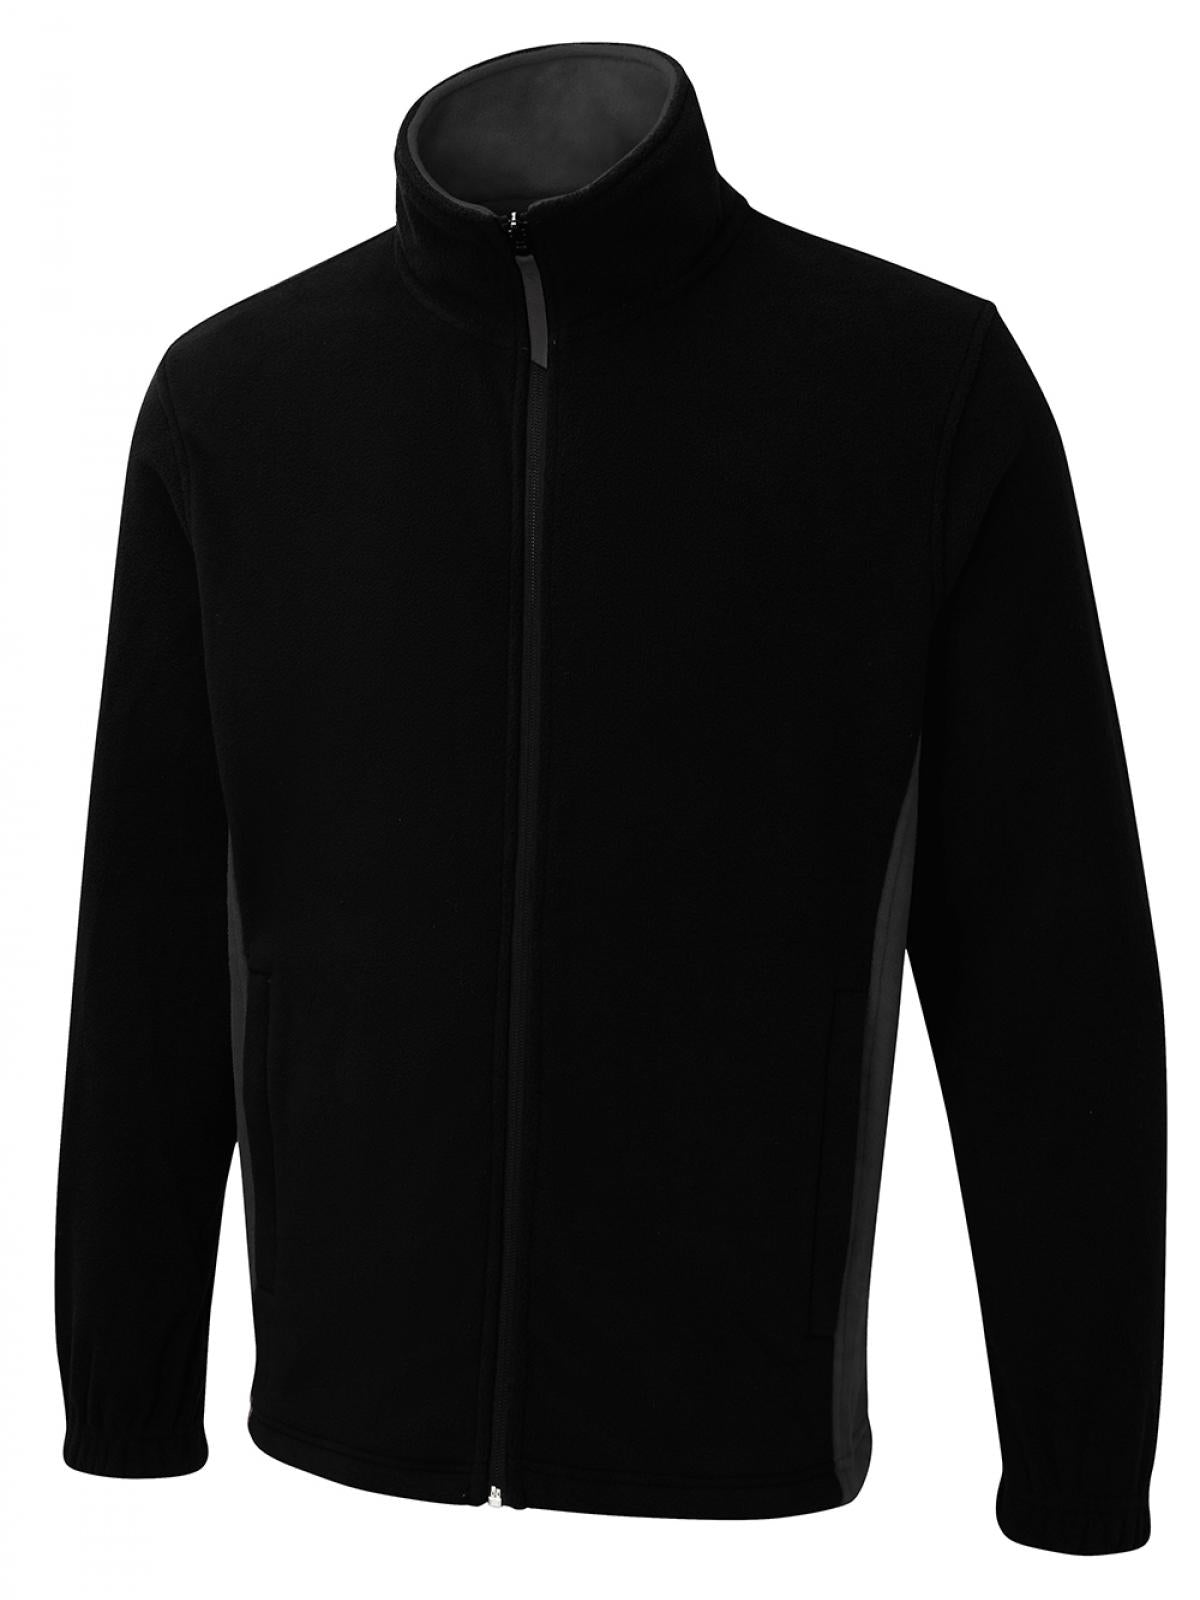 Uneek Two Tone Full Zip Fleece Jacket UC617 - Black/Charcoal